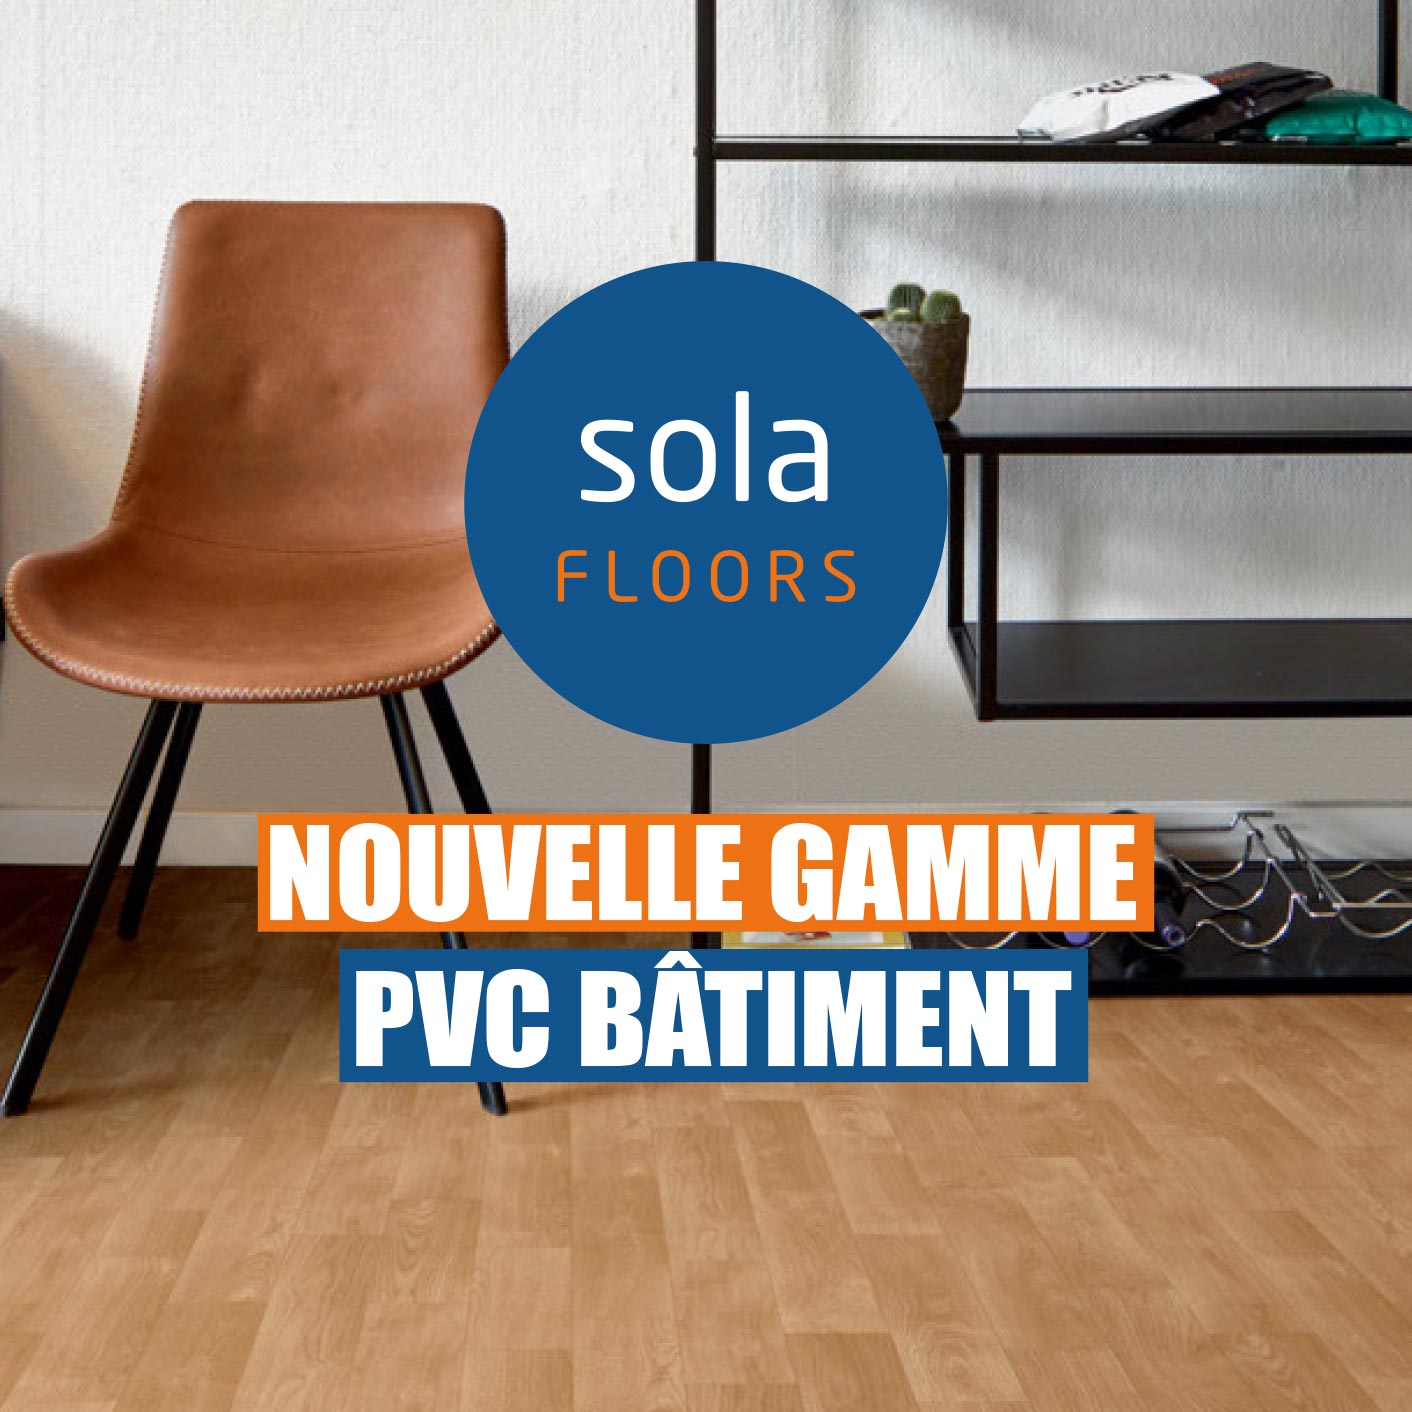 Solafloors_Nouvelle_Gamme_PVC_Batiment_La_Maison_du_Sol